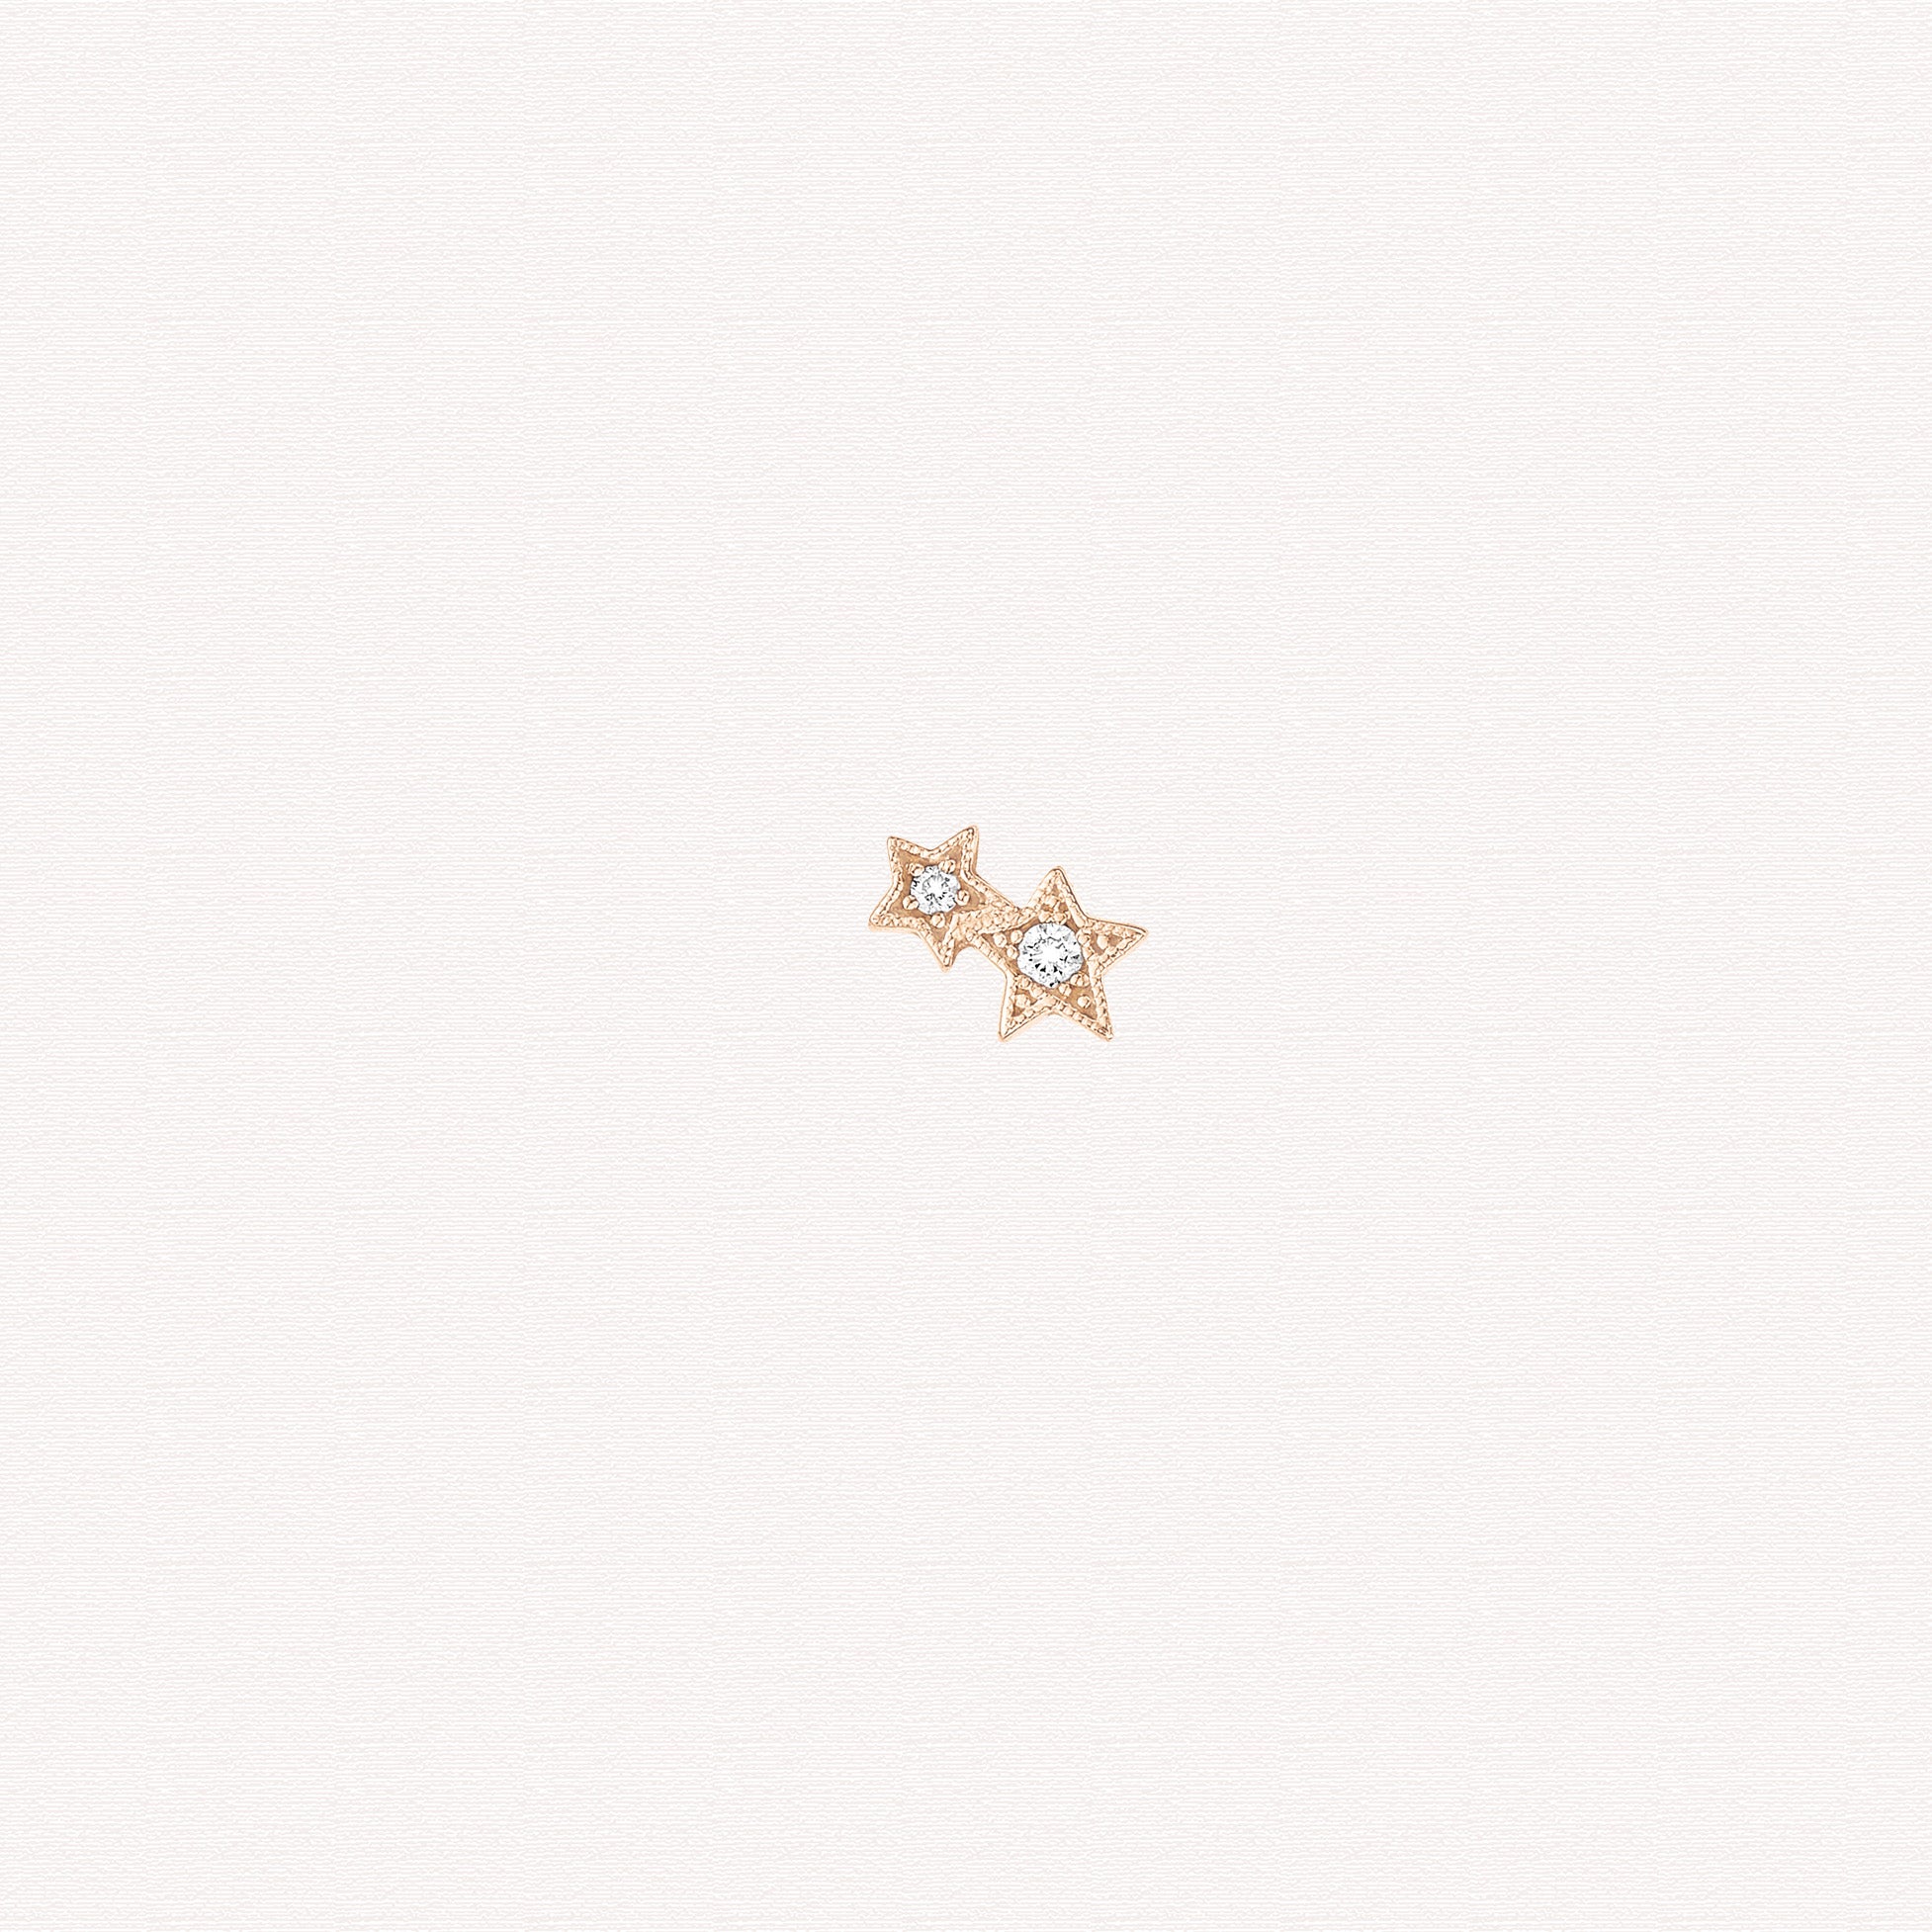 Single earring - Stardust